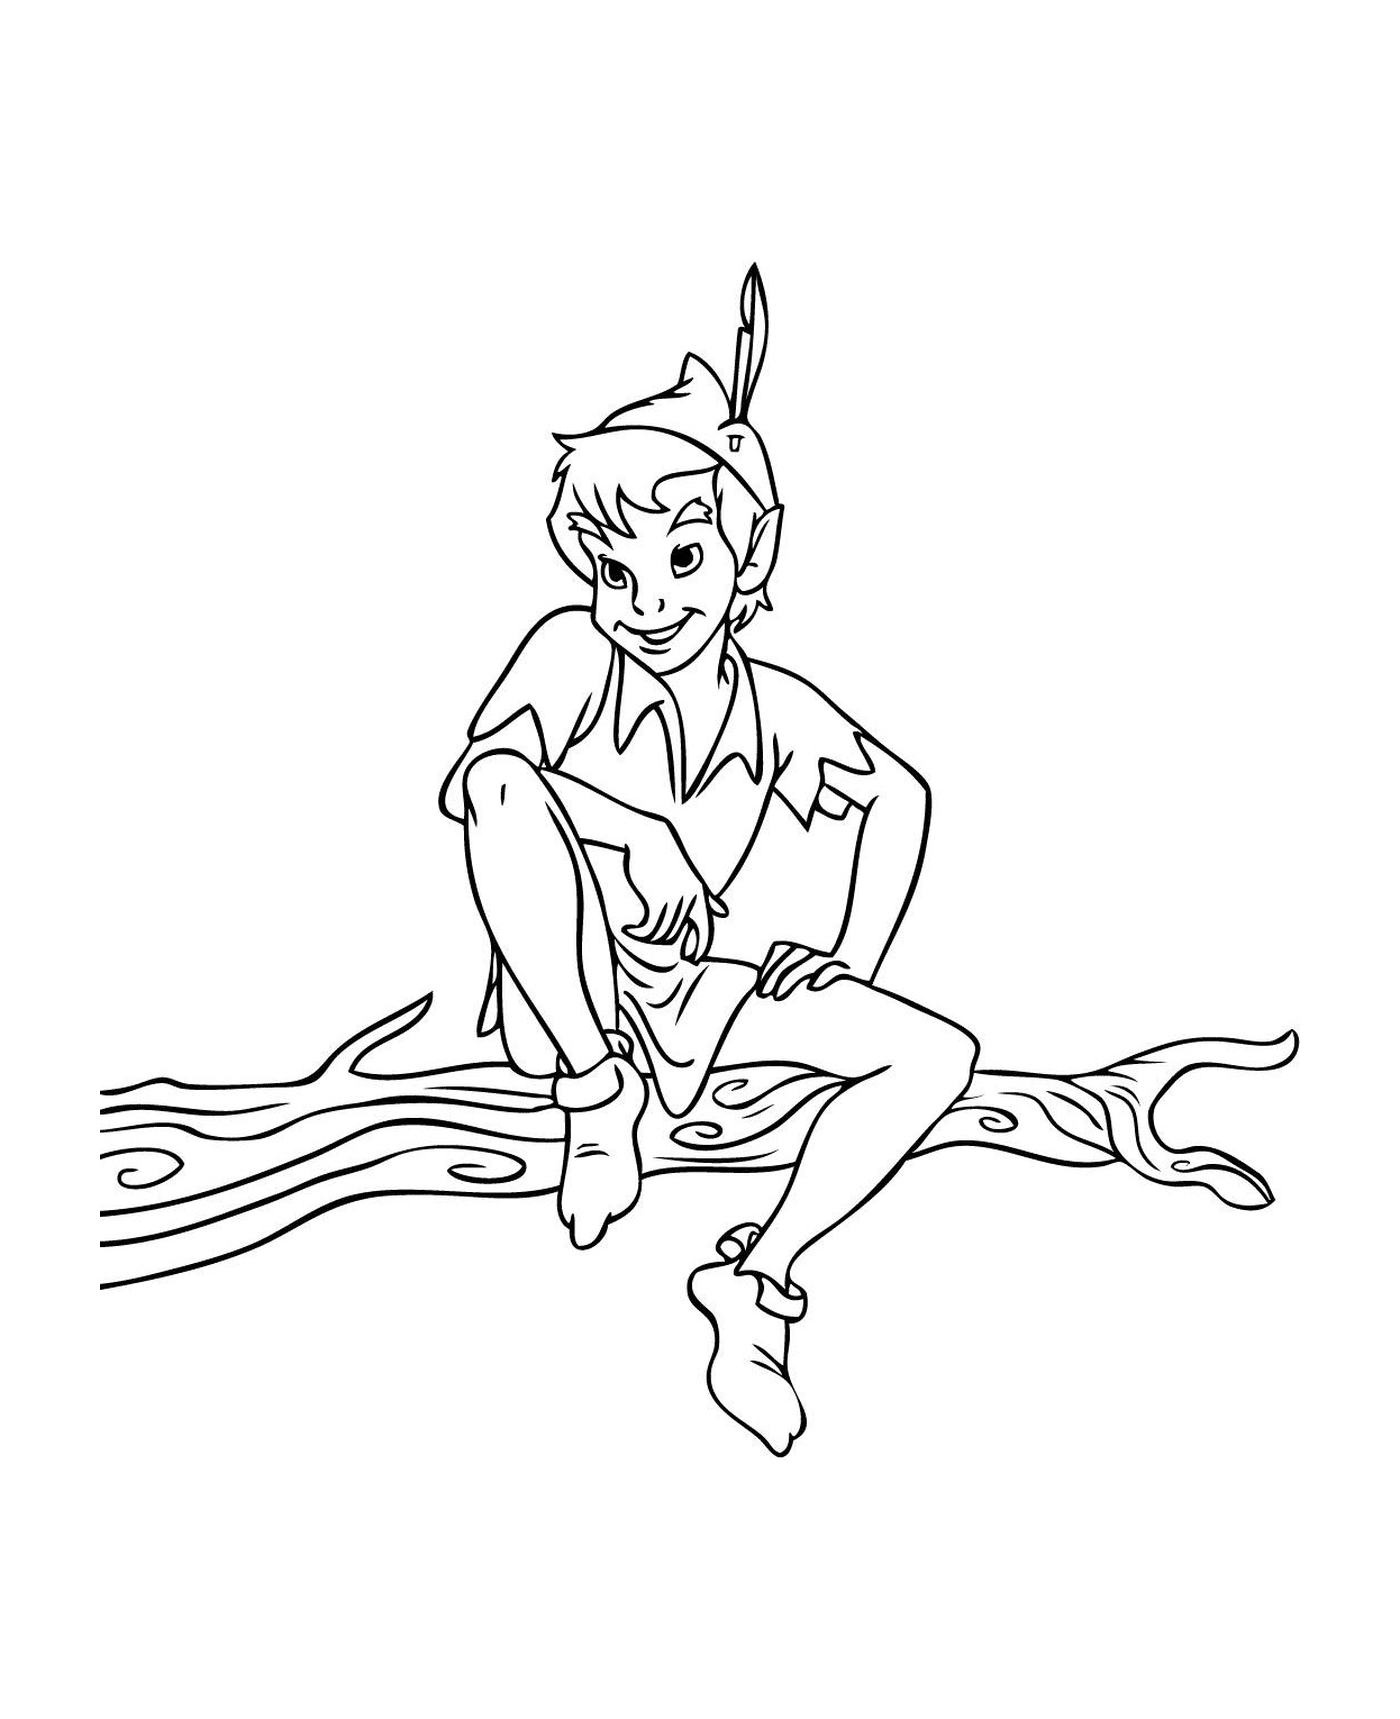  Peter Pan sitzt auf einem Baum 